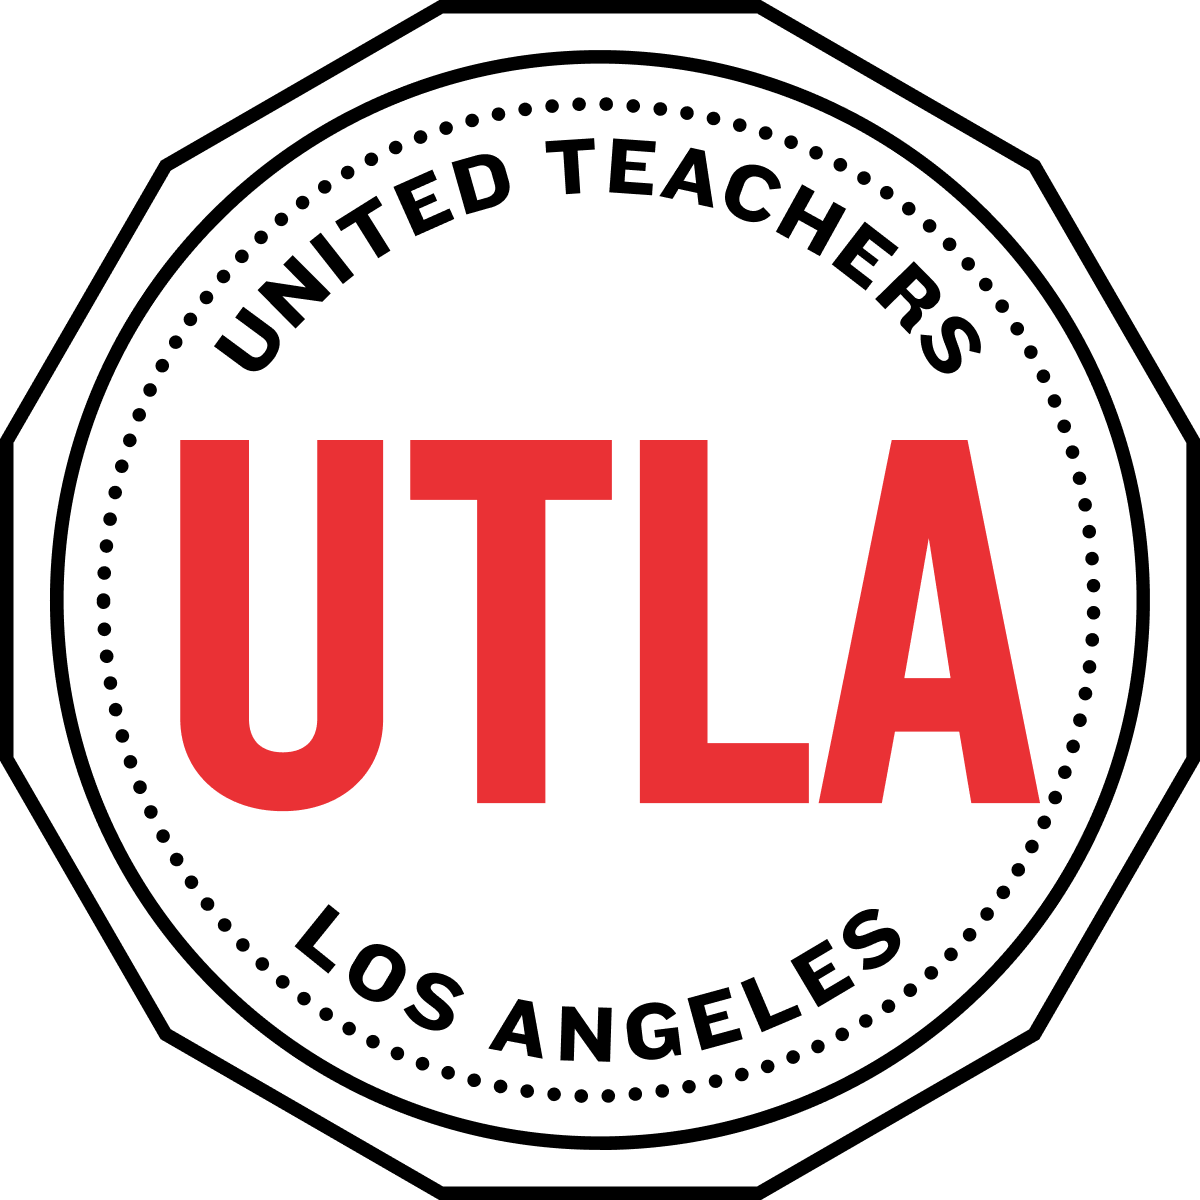 www.utla.net